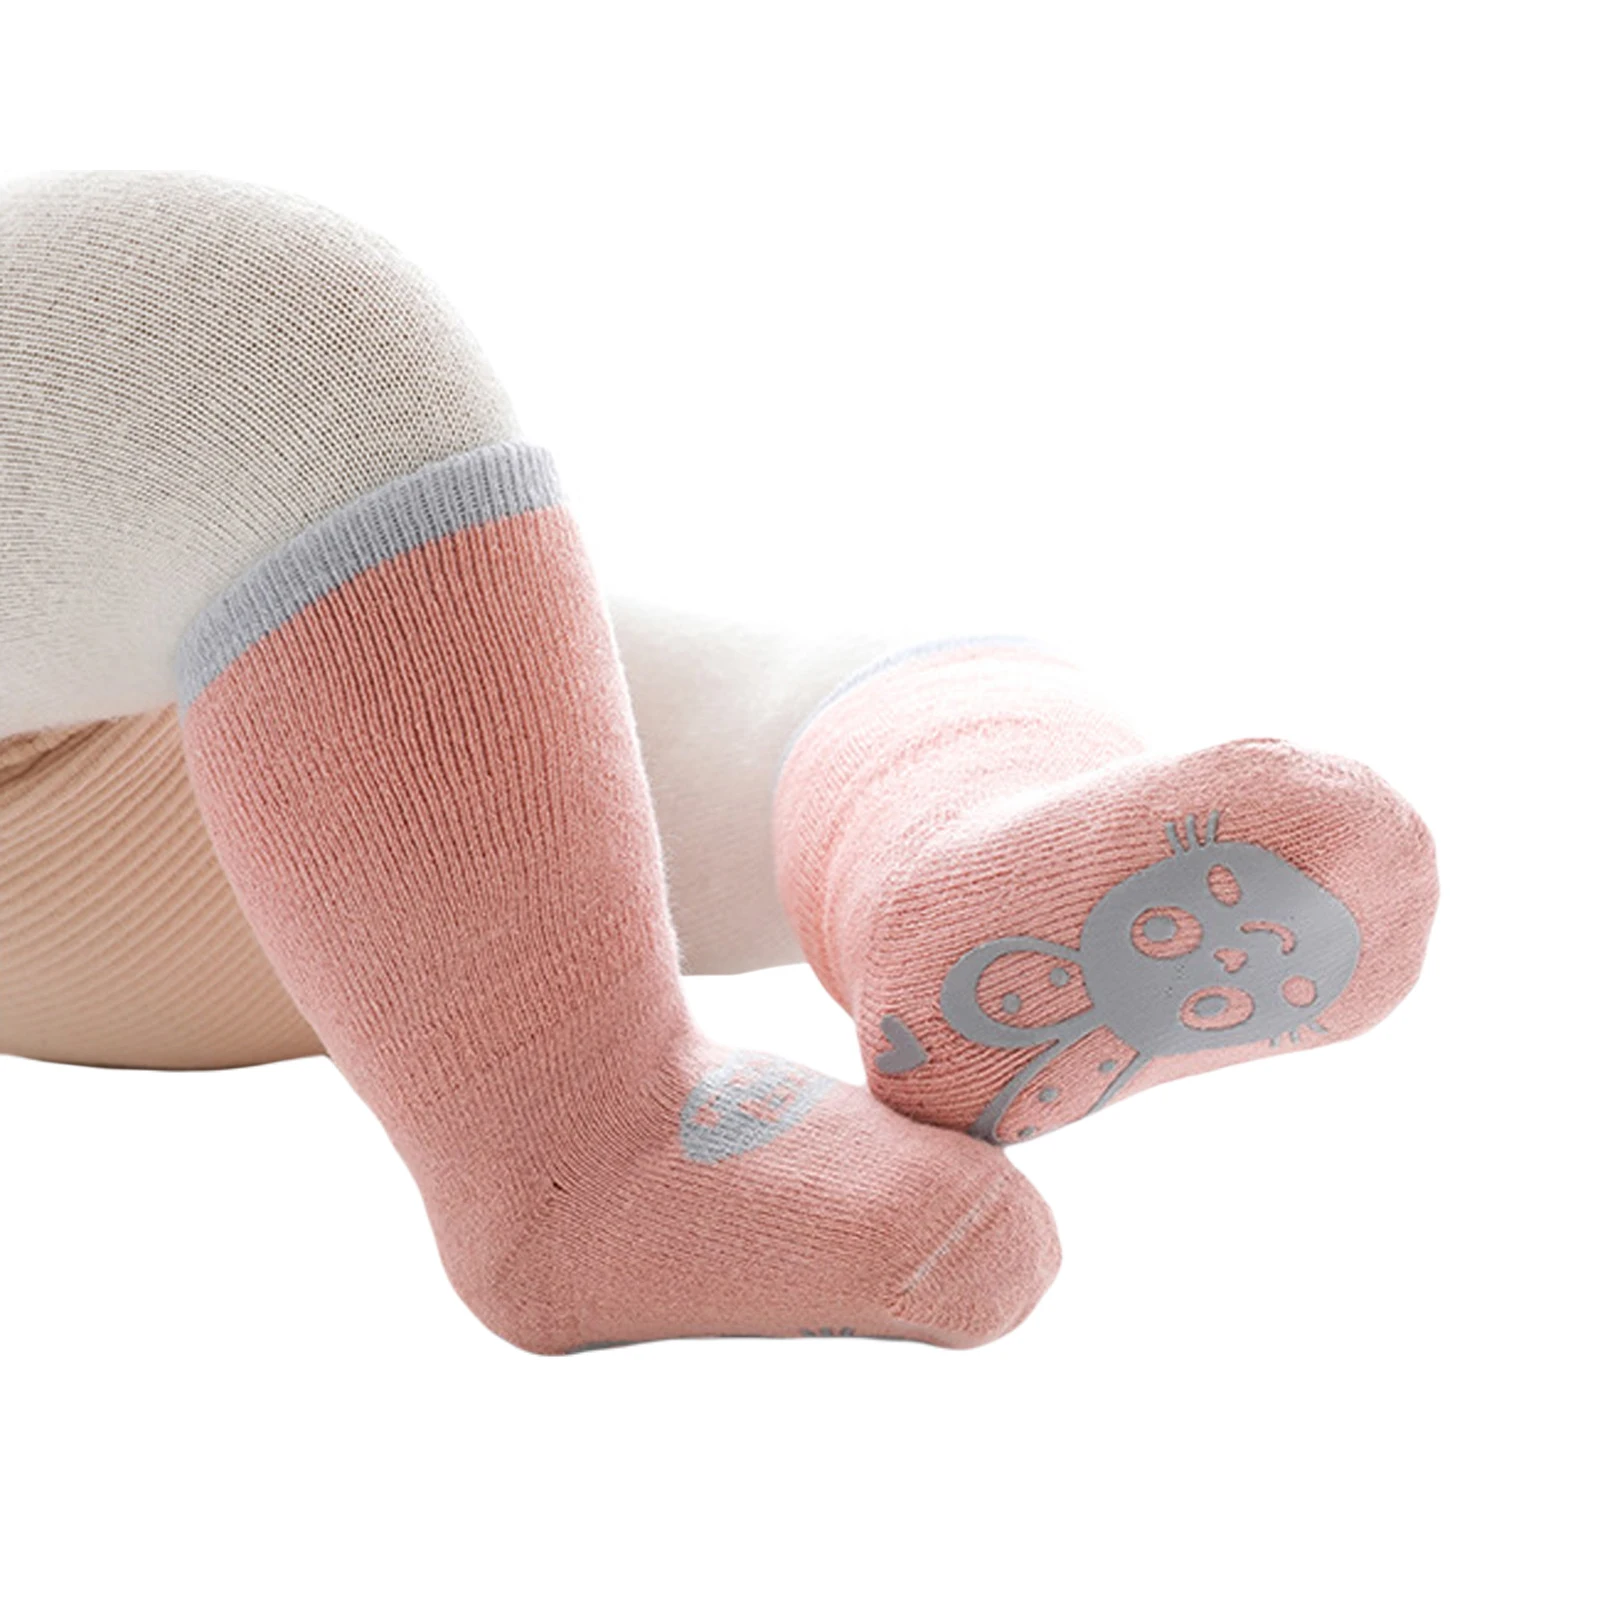 

CANIS Kids Socks Anti-Slip Medium Tube Socks Unisex Cotton Stocking for Autumn Winter 0-3 Years Kids Gift